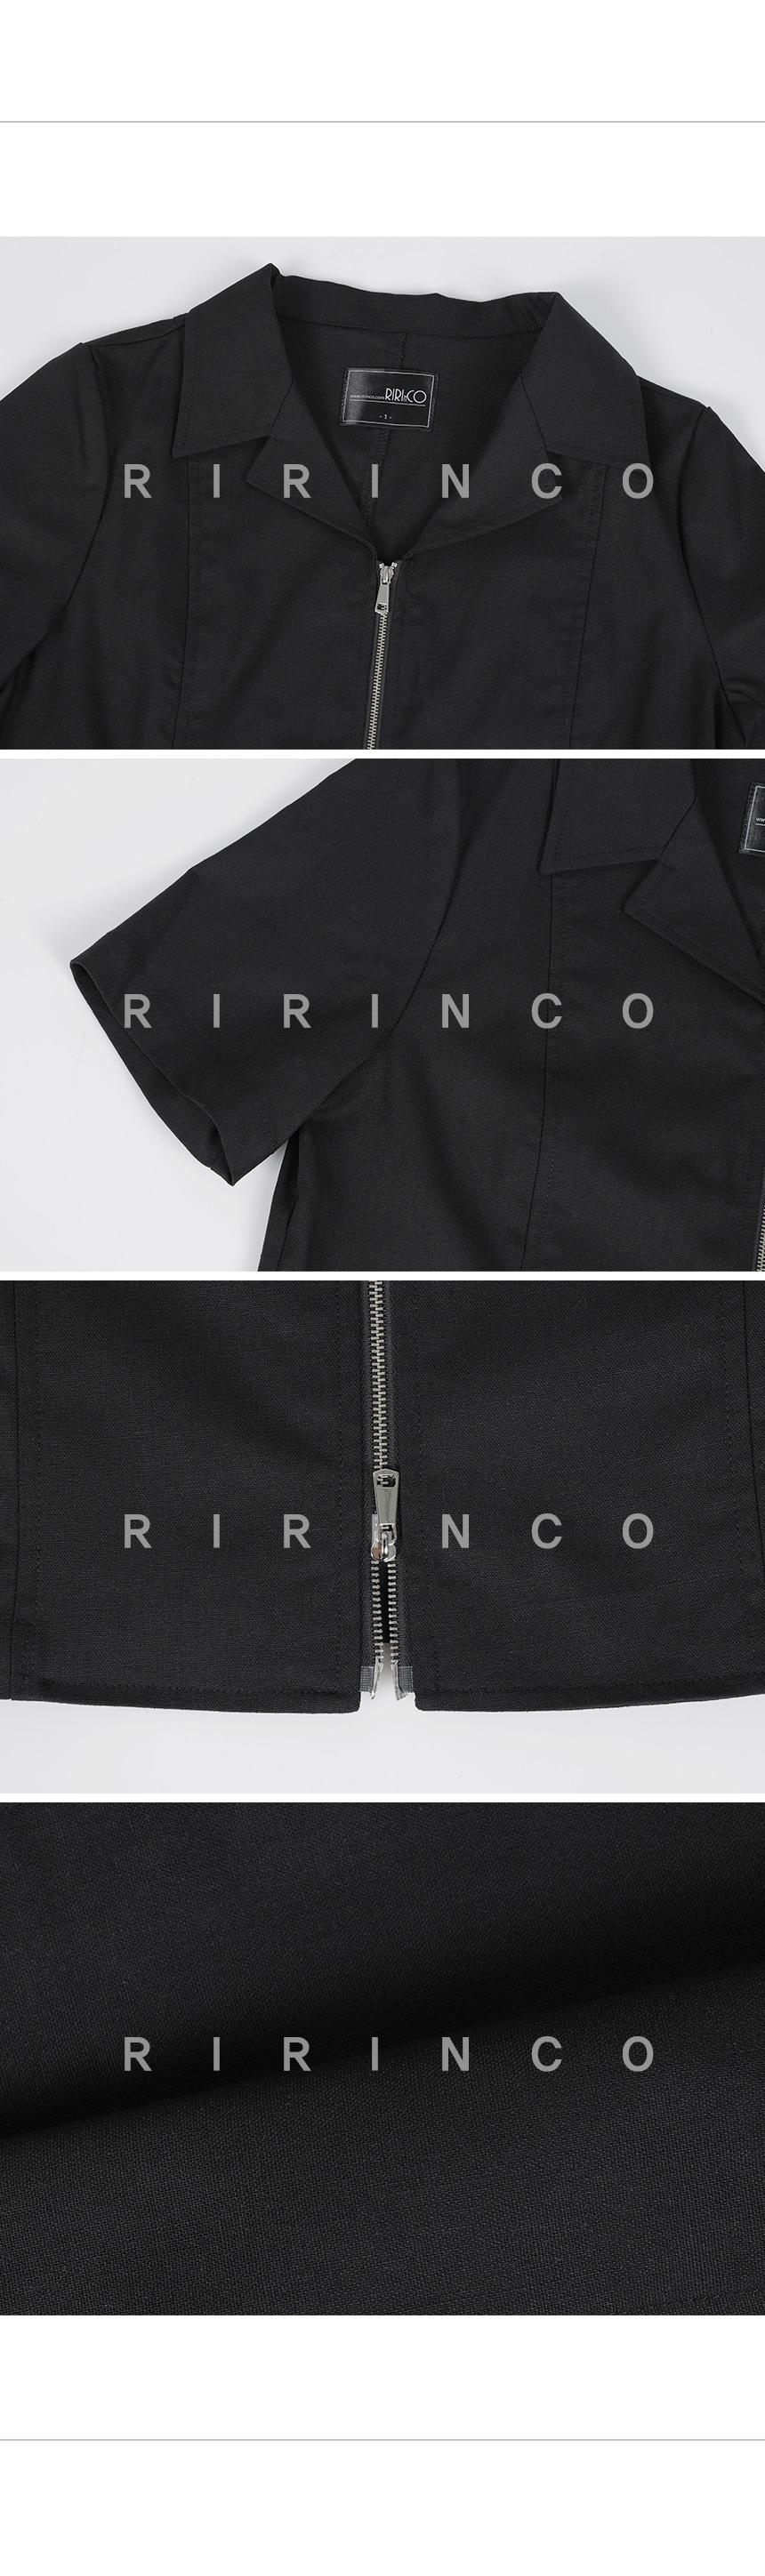 RIRINCO リネン2WAYジップアップジャケット